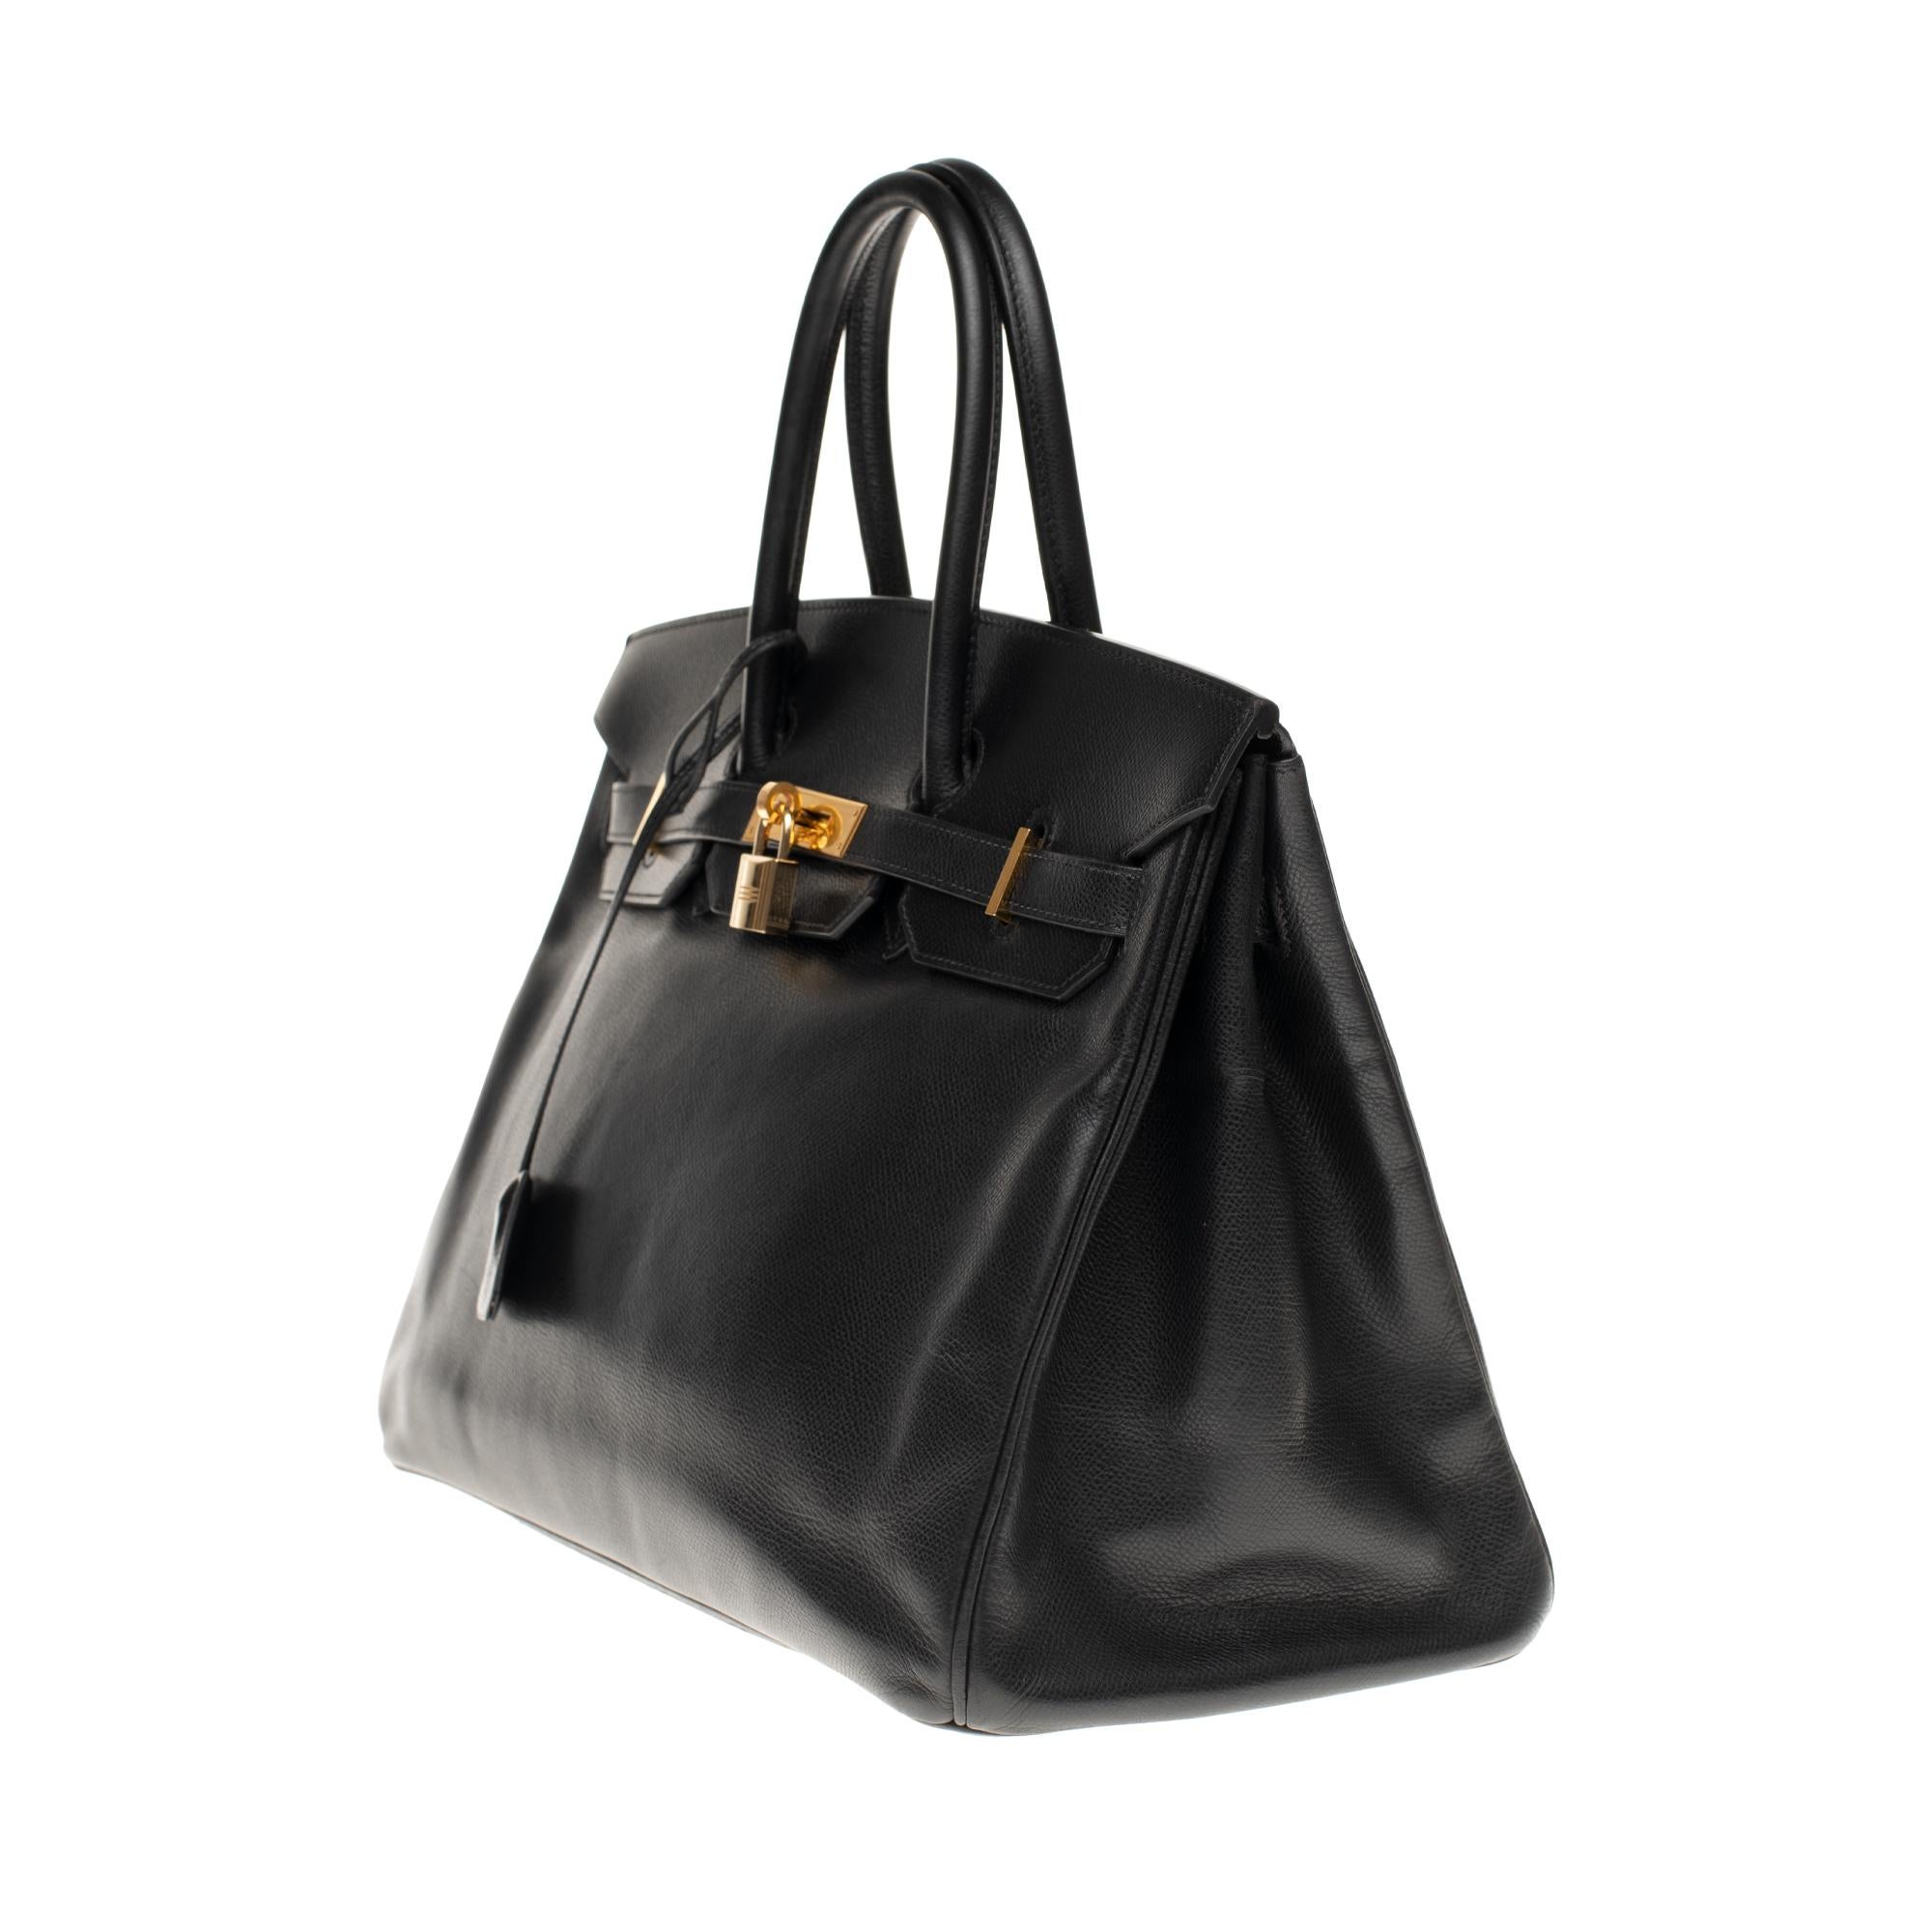 Black Hermès Birkin 35 handbag in black Courchevel leather, Gold hardware